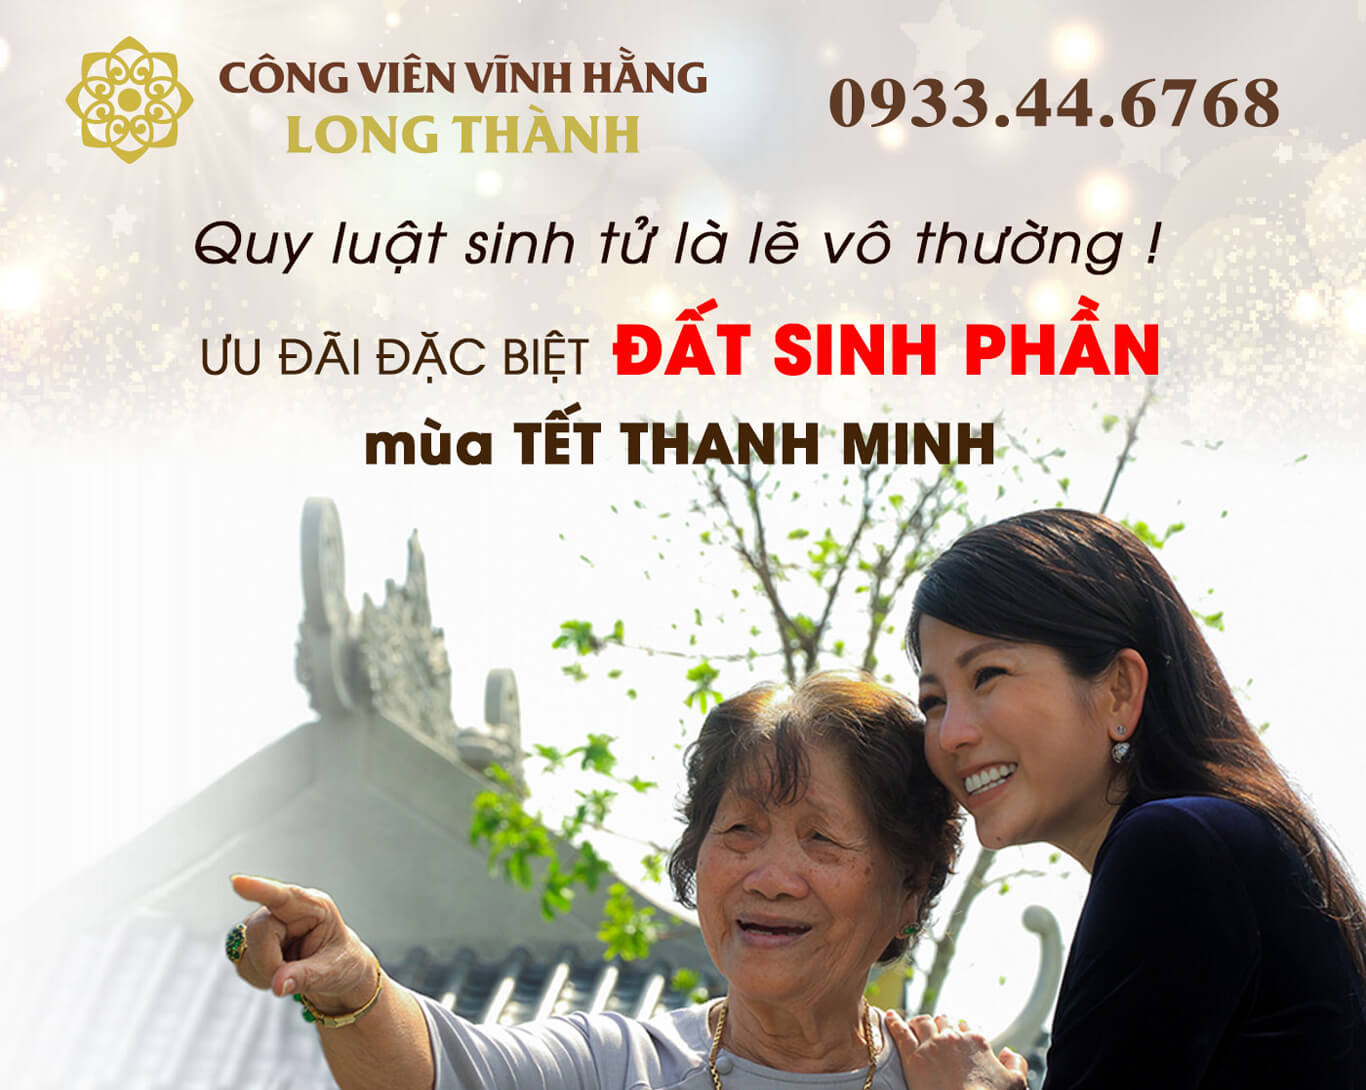 Tết Thanh Minh 2020 - Công Viên Vĩnh Hằng Long Thành